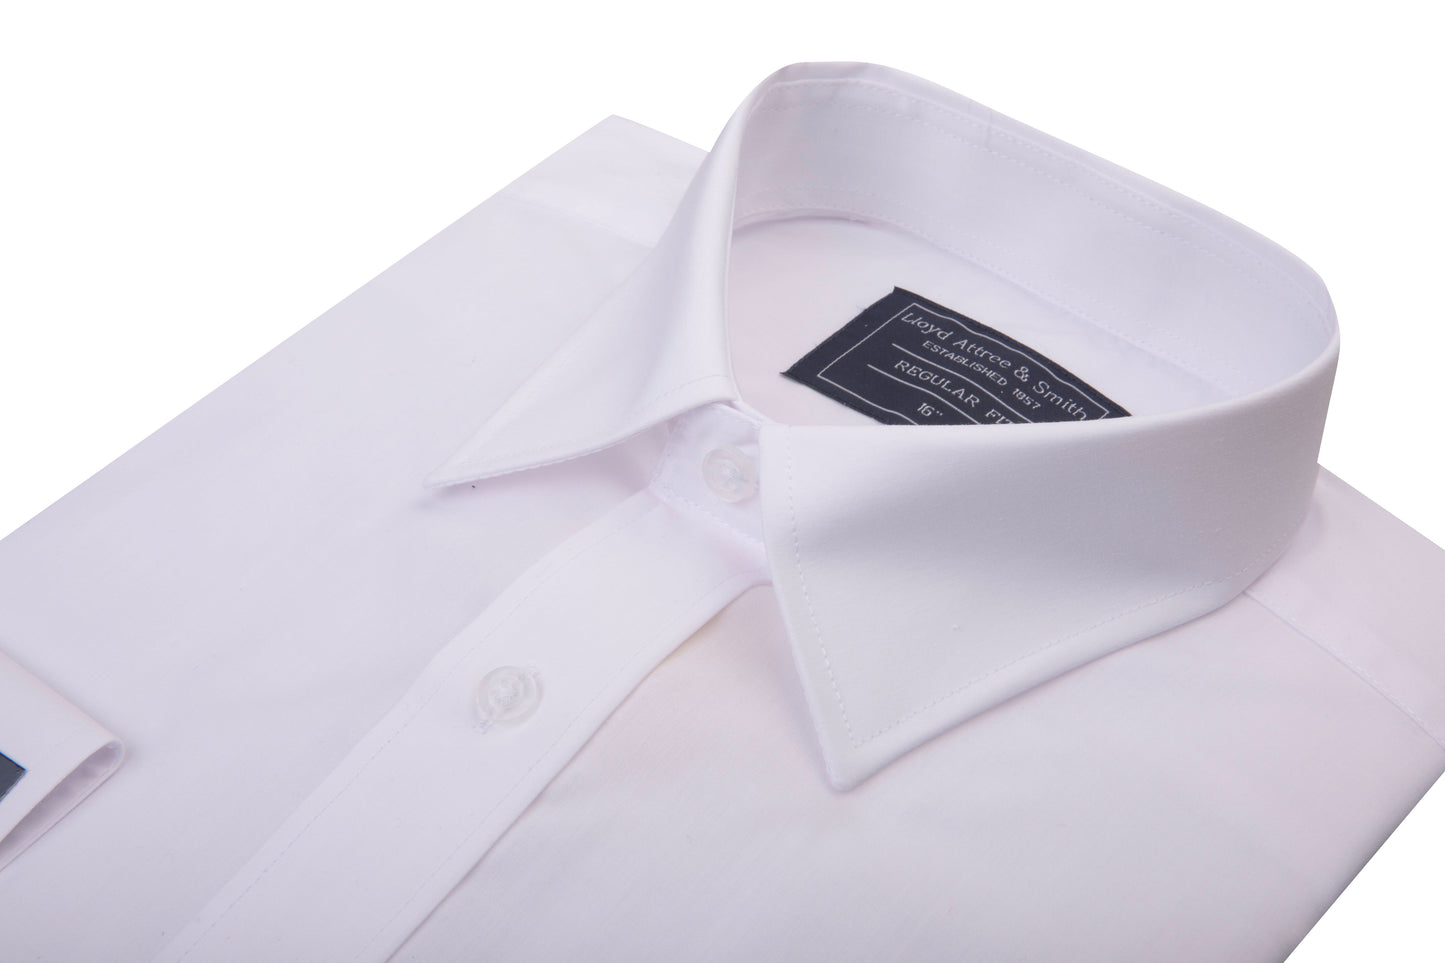 Men's White Regular Collar Formal Shirt